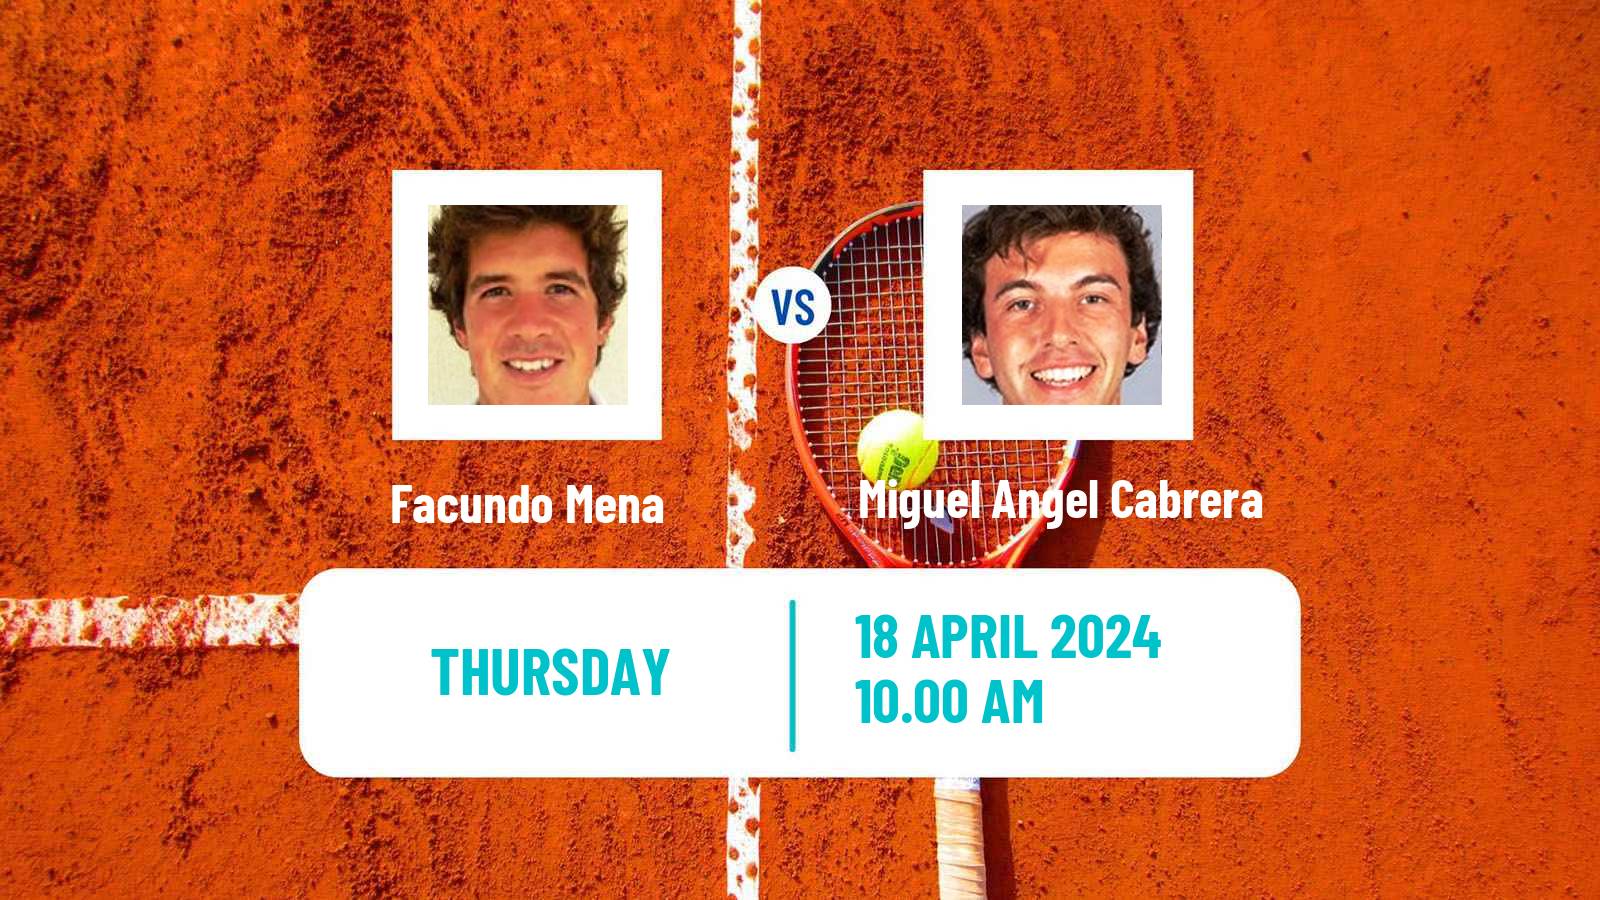 Tennis ITF M15 Santiago Men Facundo Mena - Miguel Angel Cabrera